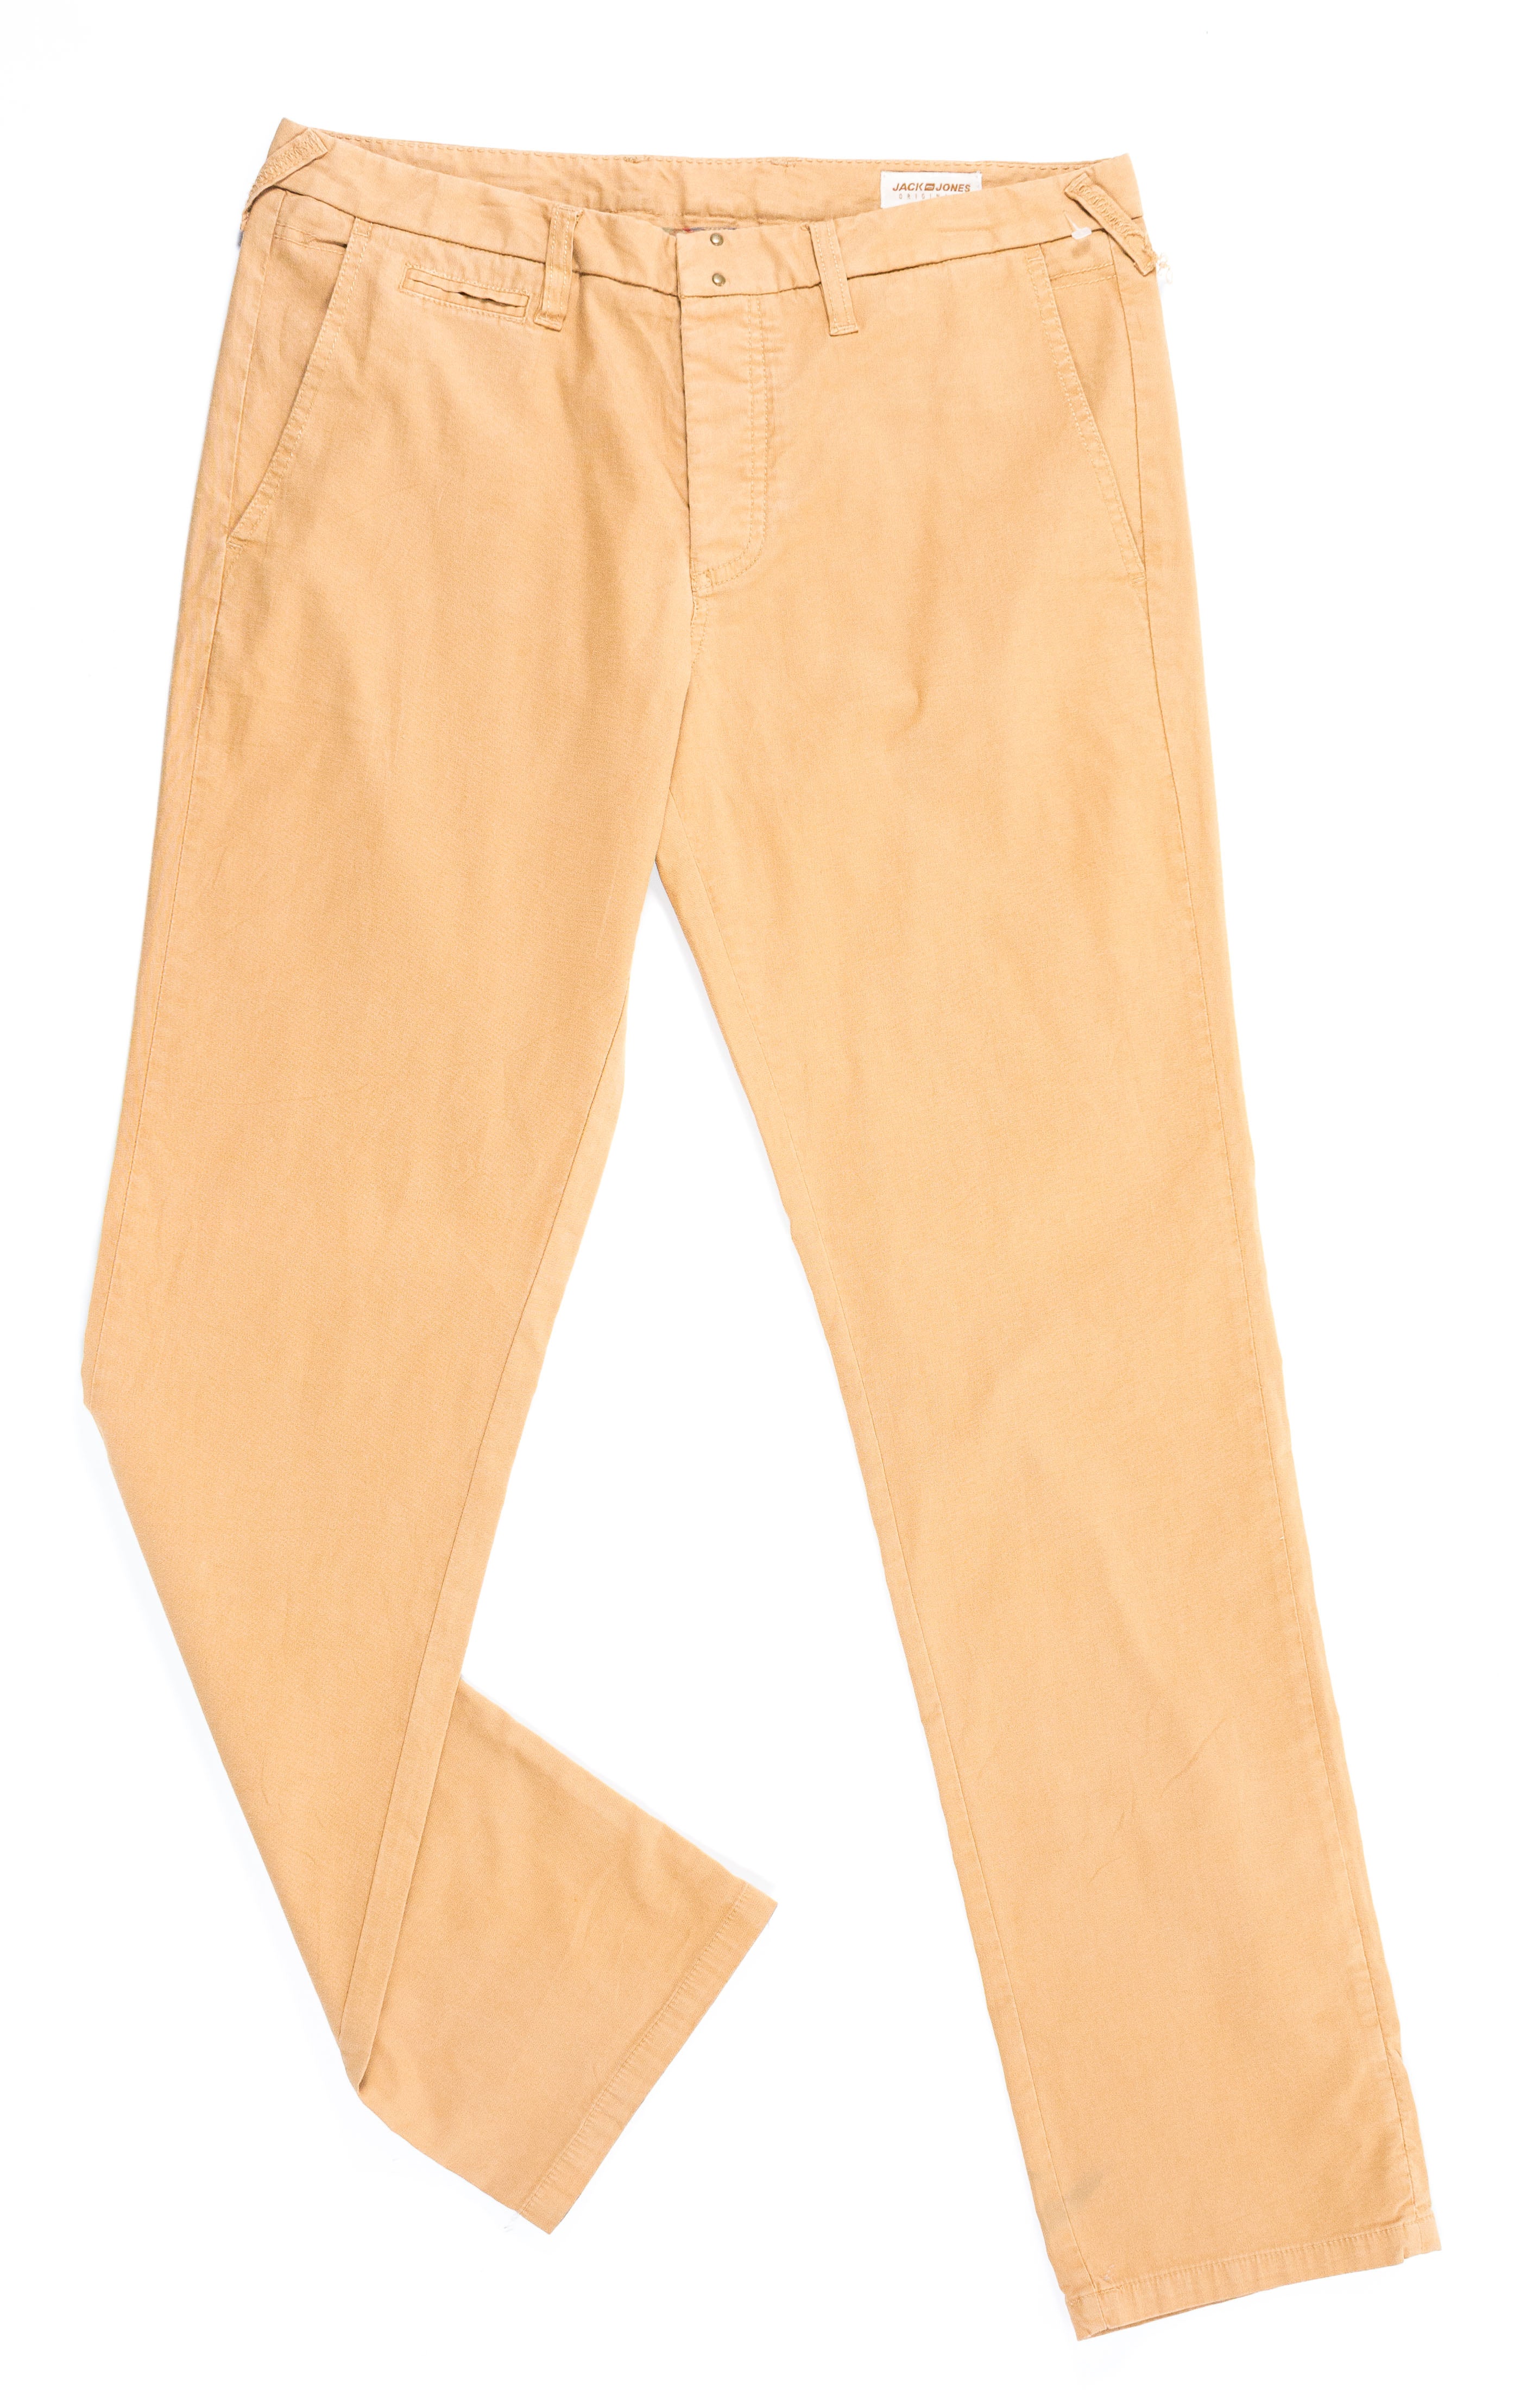 Pantalon de hombre marca Jack and Jones - (Talla: L)